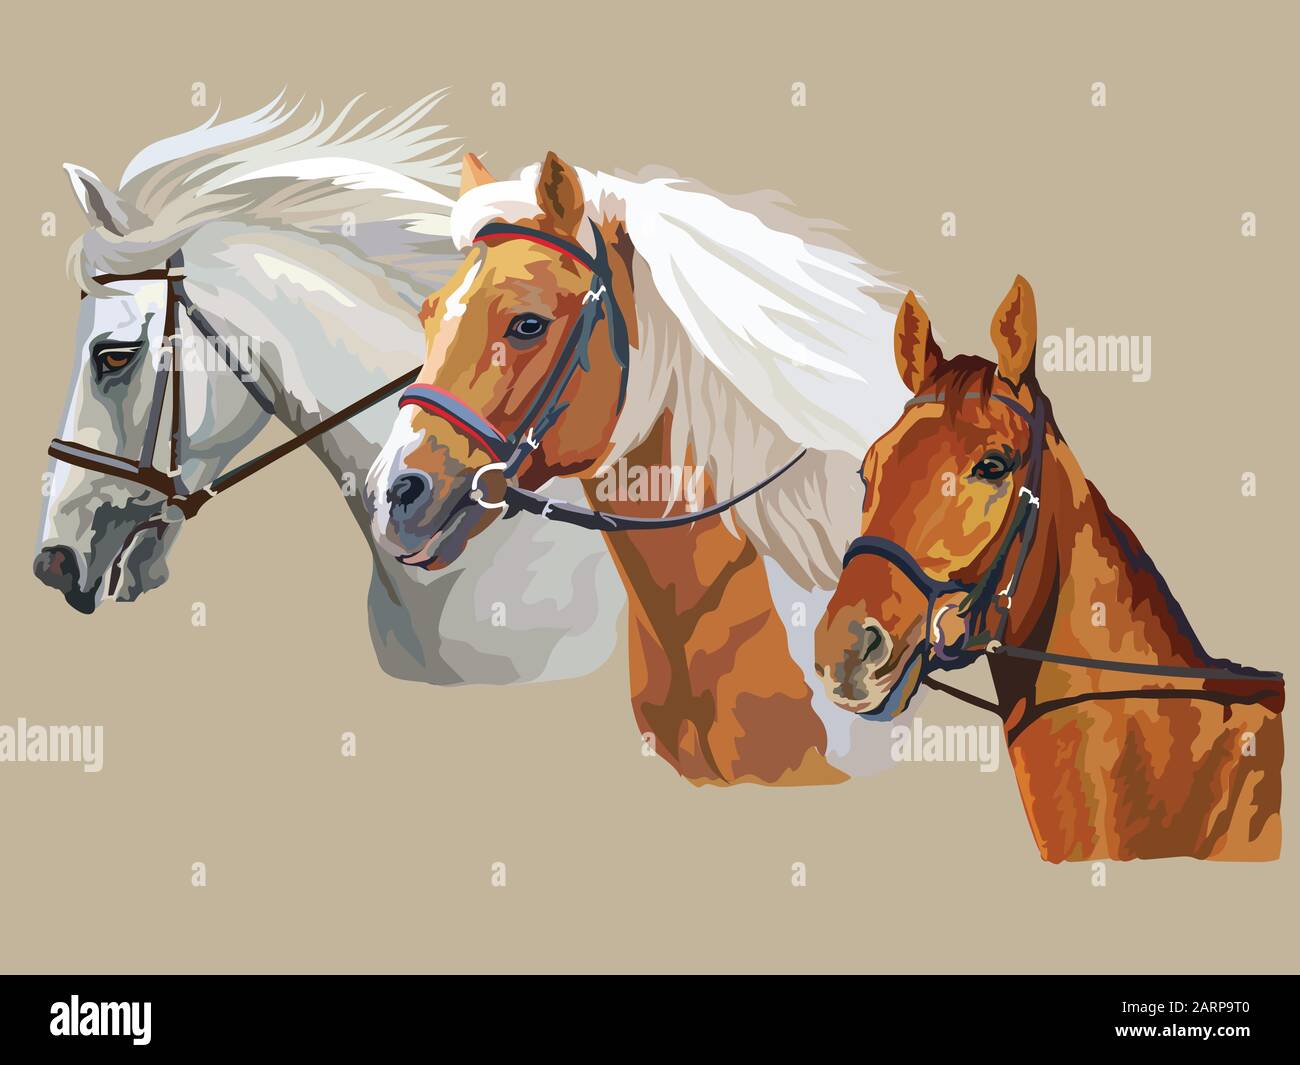 Bunte vektorrealistische Porträts von drei Pferden, die im Profil aussehen. Gruppe von Pferden in der Pfütze isoliert auf beigem Hintergrund. Vektor bunt portra Stock Vektor